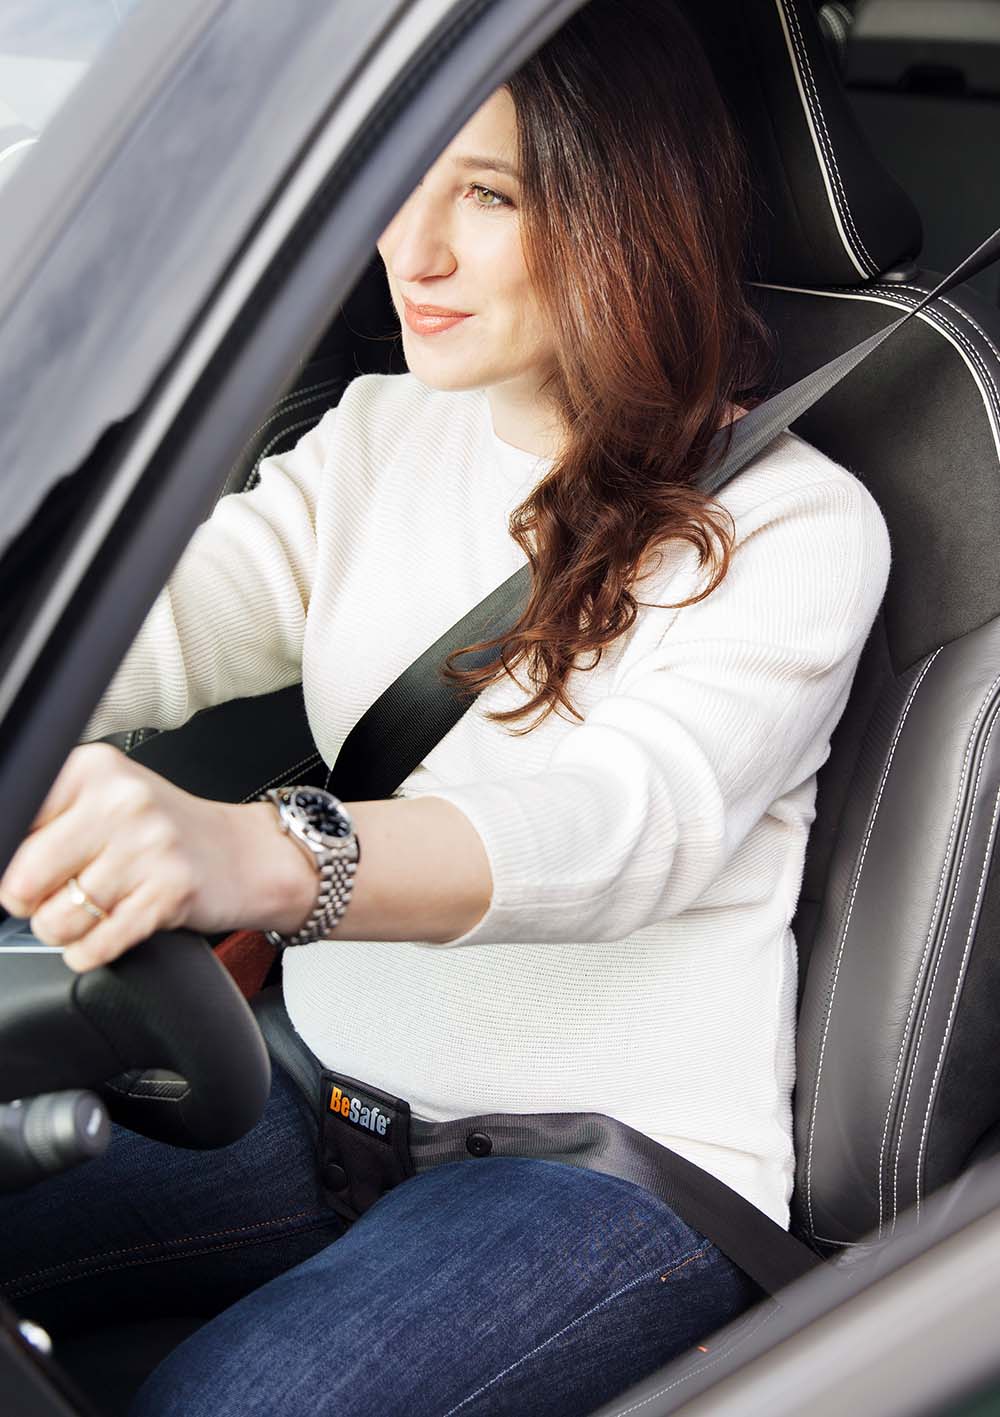 BeSafe Pregnant - Mehr Sicherheit für Schwangere und den Fötus im Auto